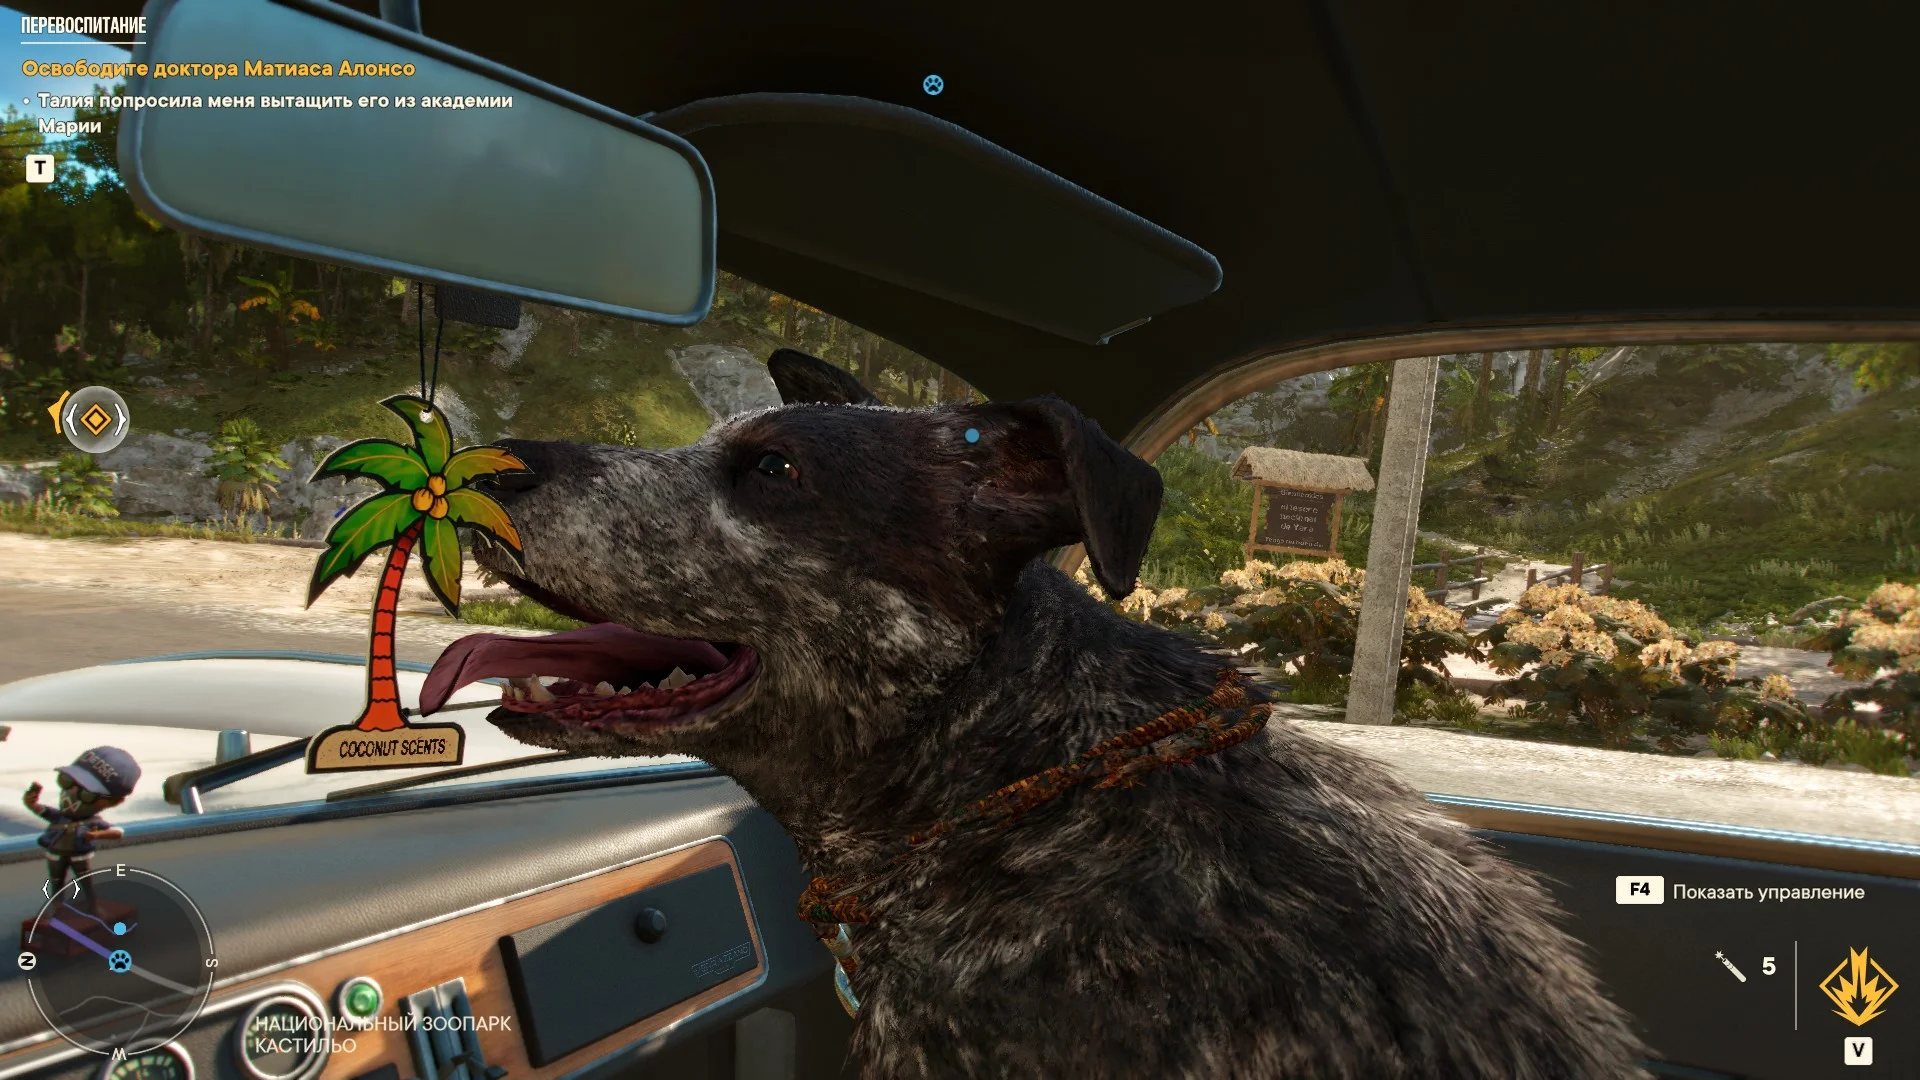 Гайд: Как найти всех амиго в Far Cry 6 и прокачать их способности - фото 3